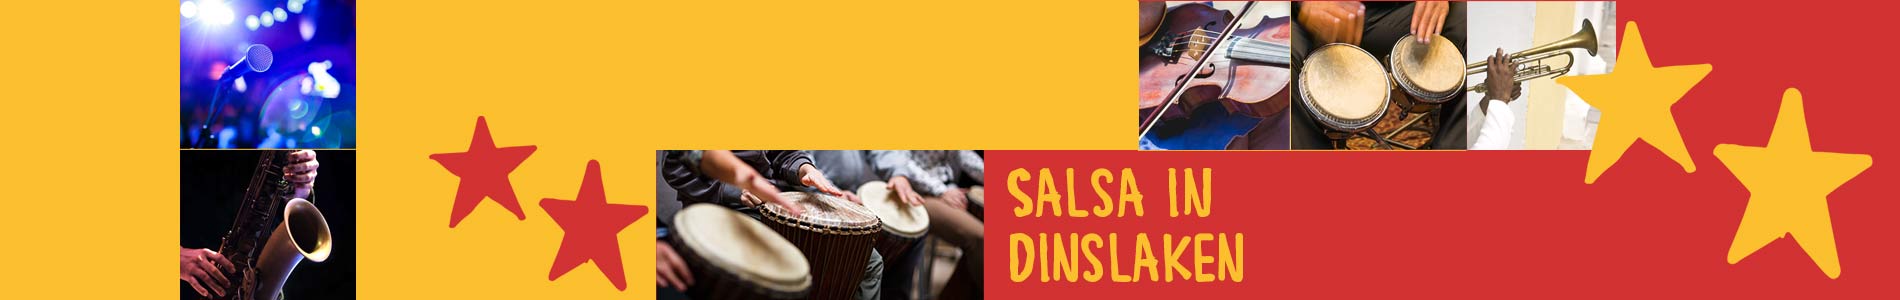 Salsa in Dinslaken – Salsa lernen und tanzen, Tanzkurse, Partys, Veranstaltungen